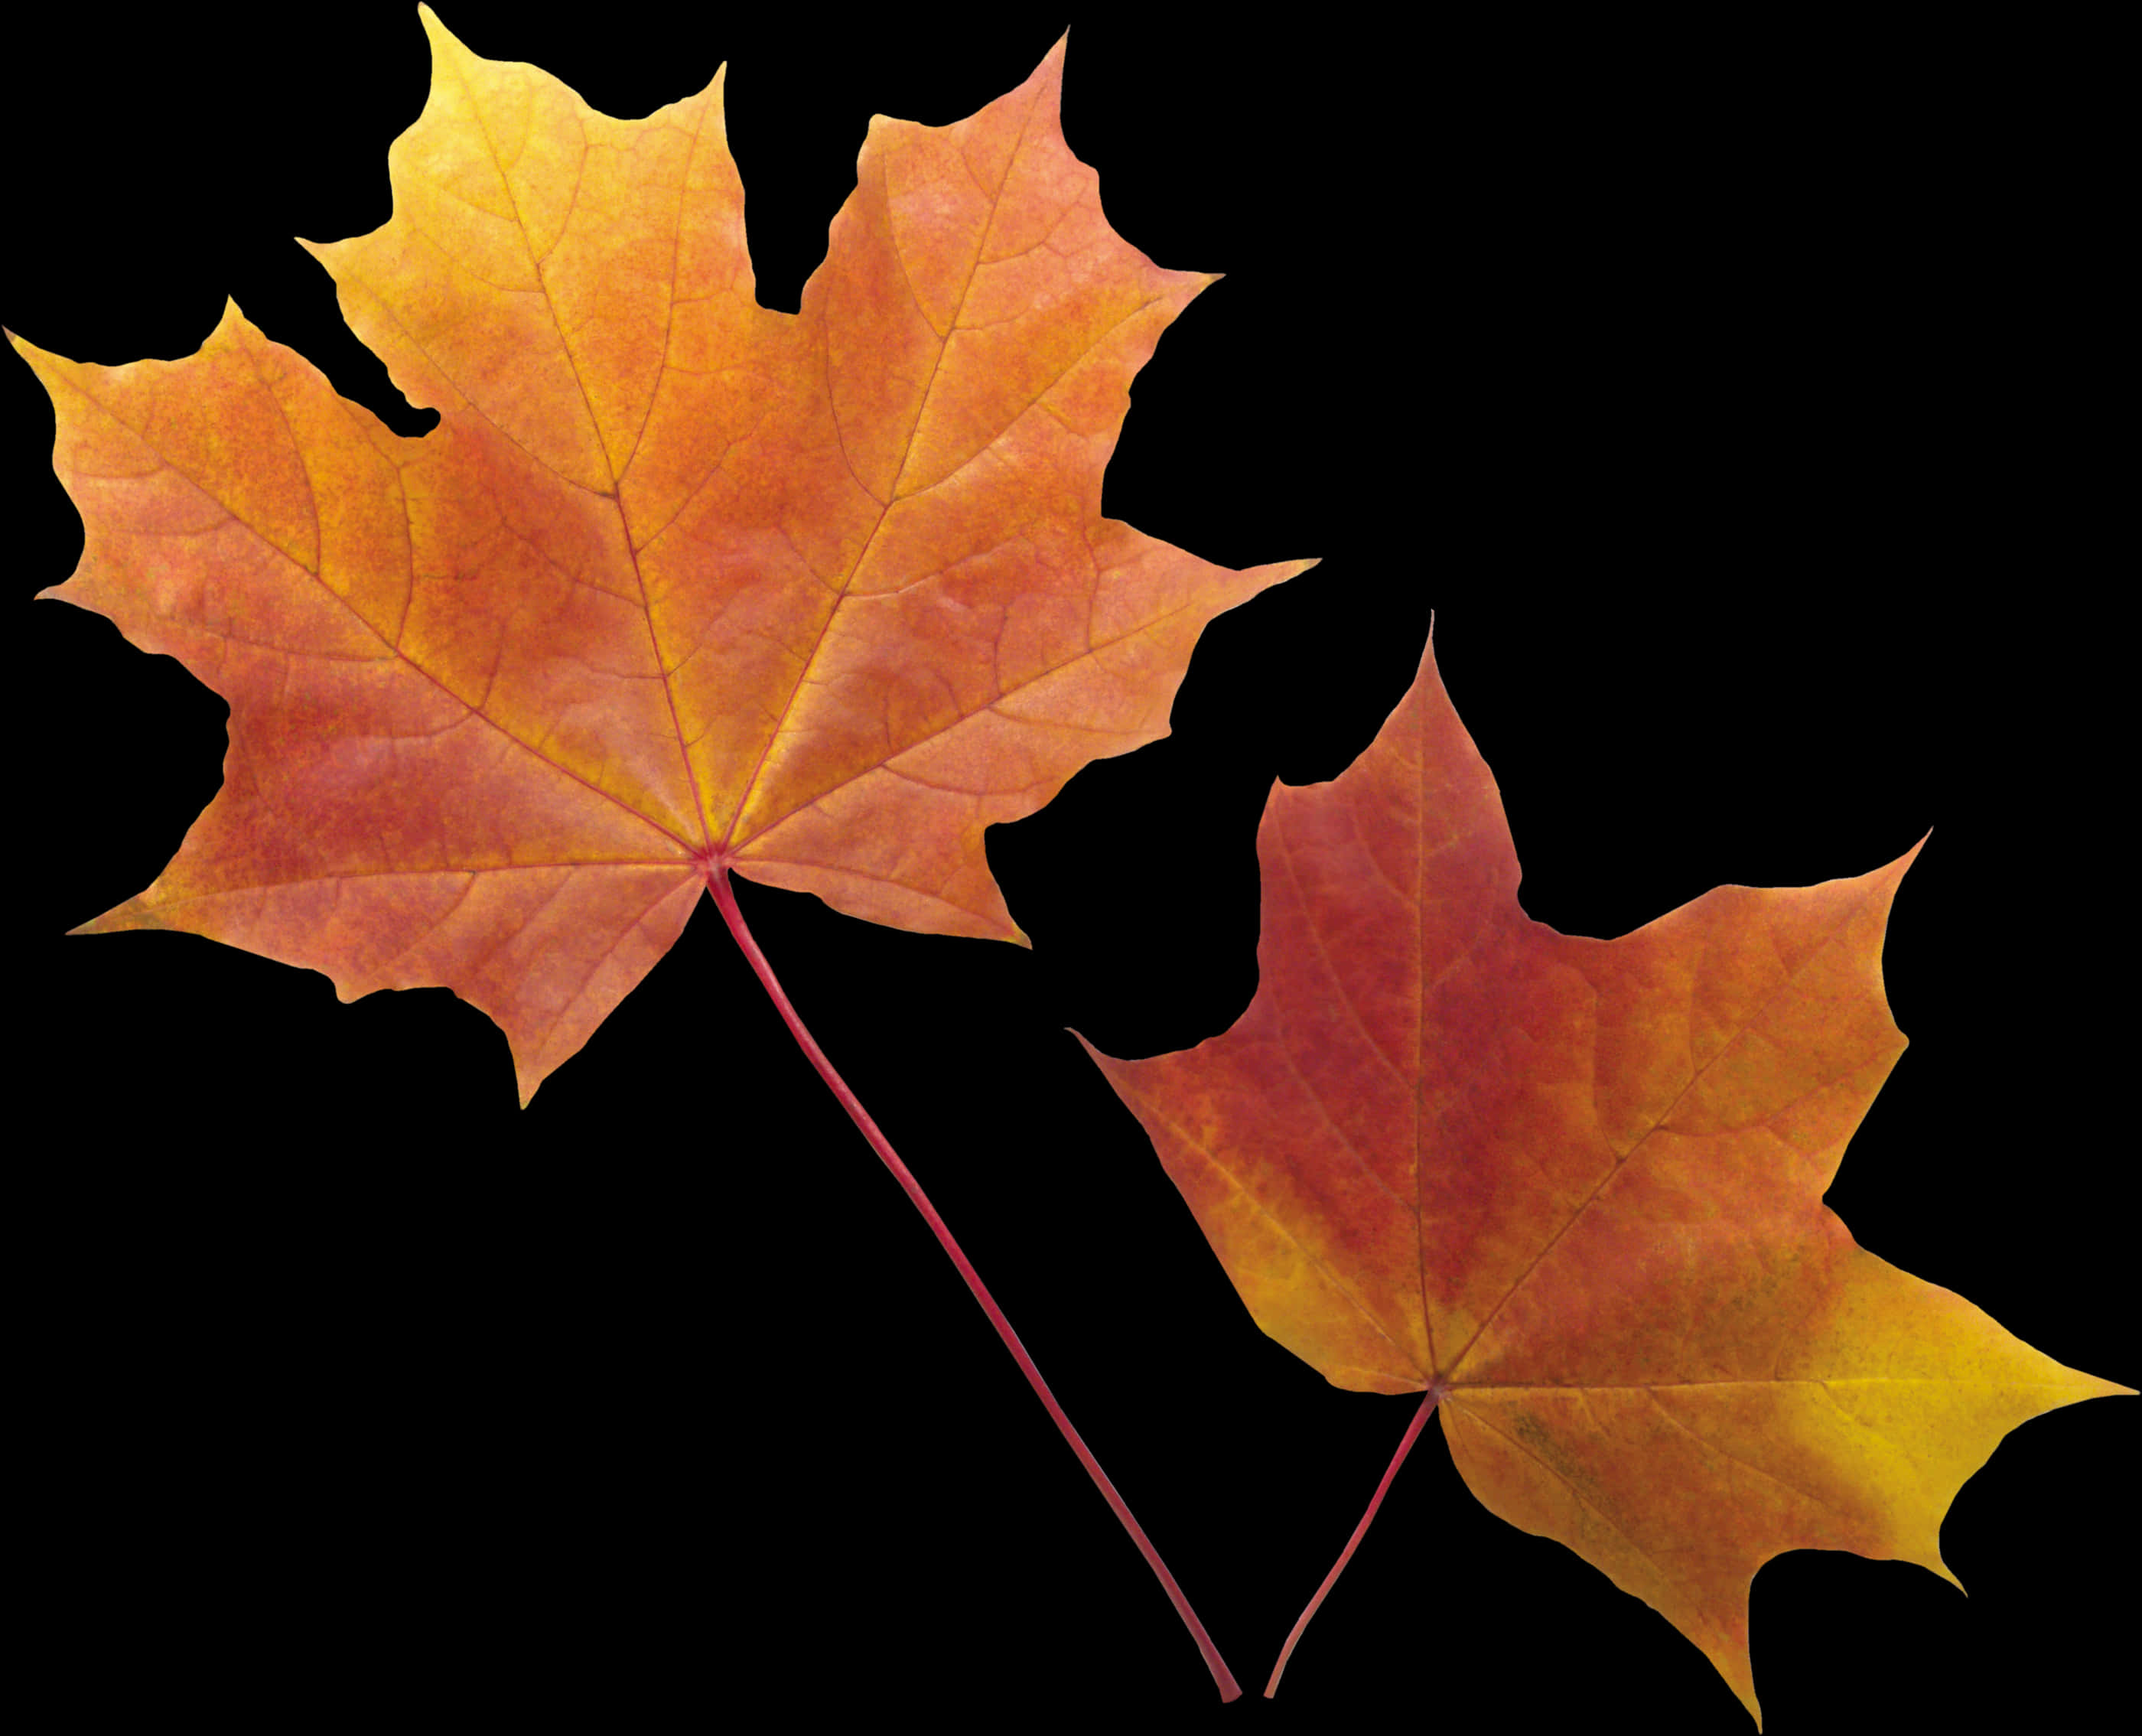 Autumn_ Leaves_ Against_ Black_ Background.jpg